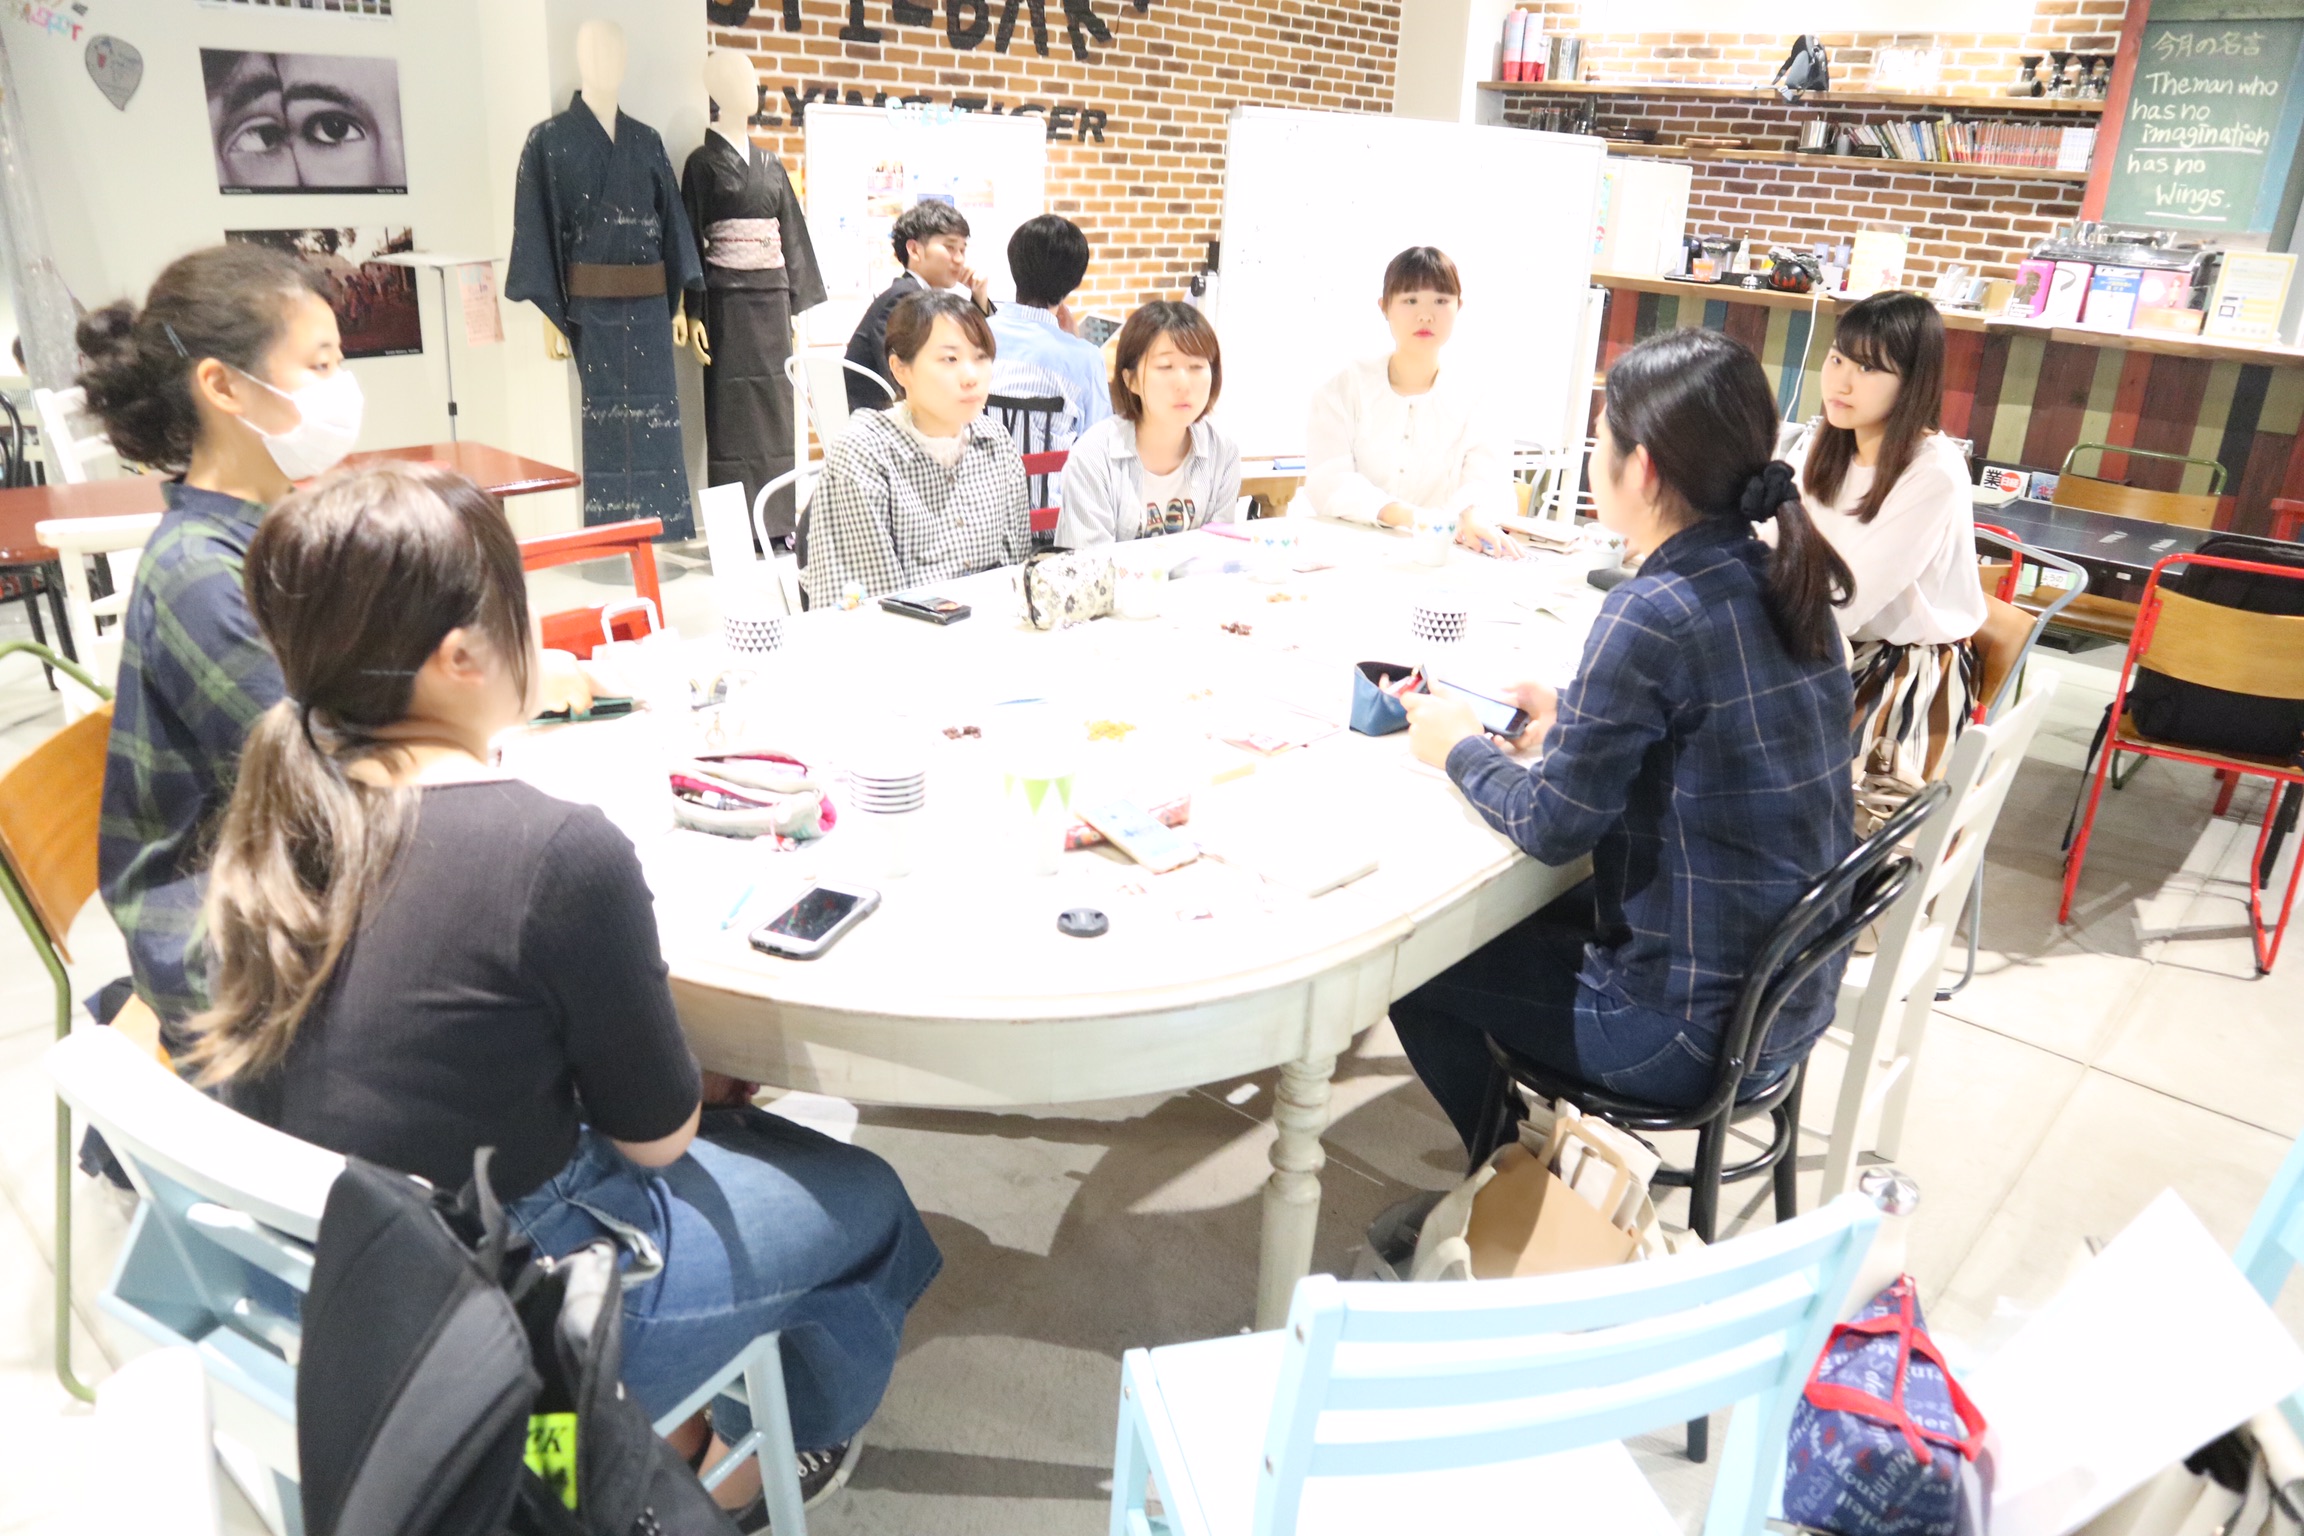 先日、京都三条にある学生カフェhyggerで京都支部ミーティングが行われました夏休みの間、それぞれ忙しくしていたメンバーが久々に集い、今後の活動について話し合いました。今回の議題は以下のものです。・阪急試食販売・JF兵庫漁連さんとの取り組み 〈阪急試食販売〉毎月、阪急梅田本店で行われているfunによる試食販売について9月の報告と10月のメニューが発表されました。10月はドライフルーツとナッツを使った料理で、funのメンバーが考えたパウンドケーキ、かぼちゃとレーズンくるみのサラダ、フォンダンウォーターを販売します！10/20(土) 13:00～16:00頃阪急うめだ本店地下2階で行います！是非お越しください〈JF兵庫漁連さんとの取り組み〉こちらでも毎月、funのメンバーによるレシピ開発、そしてそのメニューを阪急支店やコープにて店頭販売を行なっています。こちらは来年1月までの期間限定です。*:..｡o○☆*ﾟ¨ﾟﾟ･*:..｡o○☆*ﾟ¨ﾟﾟ･*:..｡o○☆*ﾟ¨ﾟ ･*:..｡o○☆*ﾟ¨ﾟﾟ･*:..｡o○☆*ﾟ¨ﾟﾟ住所：兵庫県芦屋市大原町9-1-806 株式会社然 内（http://www.zen-marche.com/）http://fun-westjapan.com/【発行者】 fun実行委員会～栄養学生団体【fun】は、関西を中心とした　　　　栄養士・管理栄養士養成コースの学生が活動する団体です。～･*:..｡o○☆*ﾟ¨ﾟﾟ･*:..｡o○☆*ﾟ¨ﾟﾟ･*:..｡o○☆*ﾟ¨ﾟ ･*:..｡o○☆*ﾟ¨ﾟﾟ･*:..｡